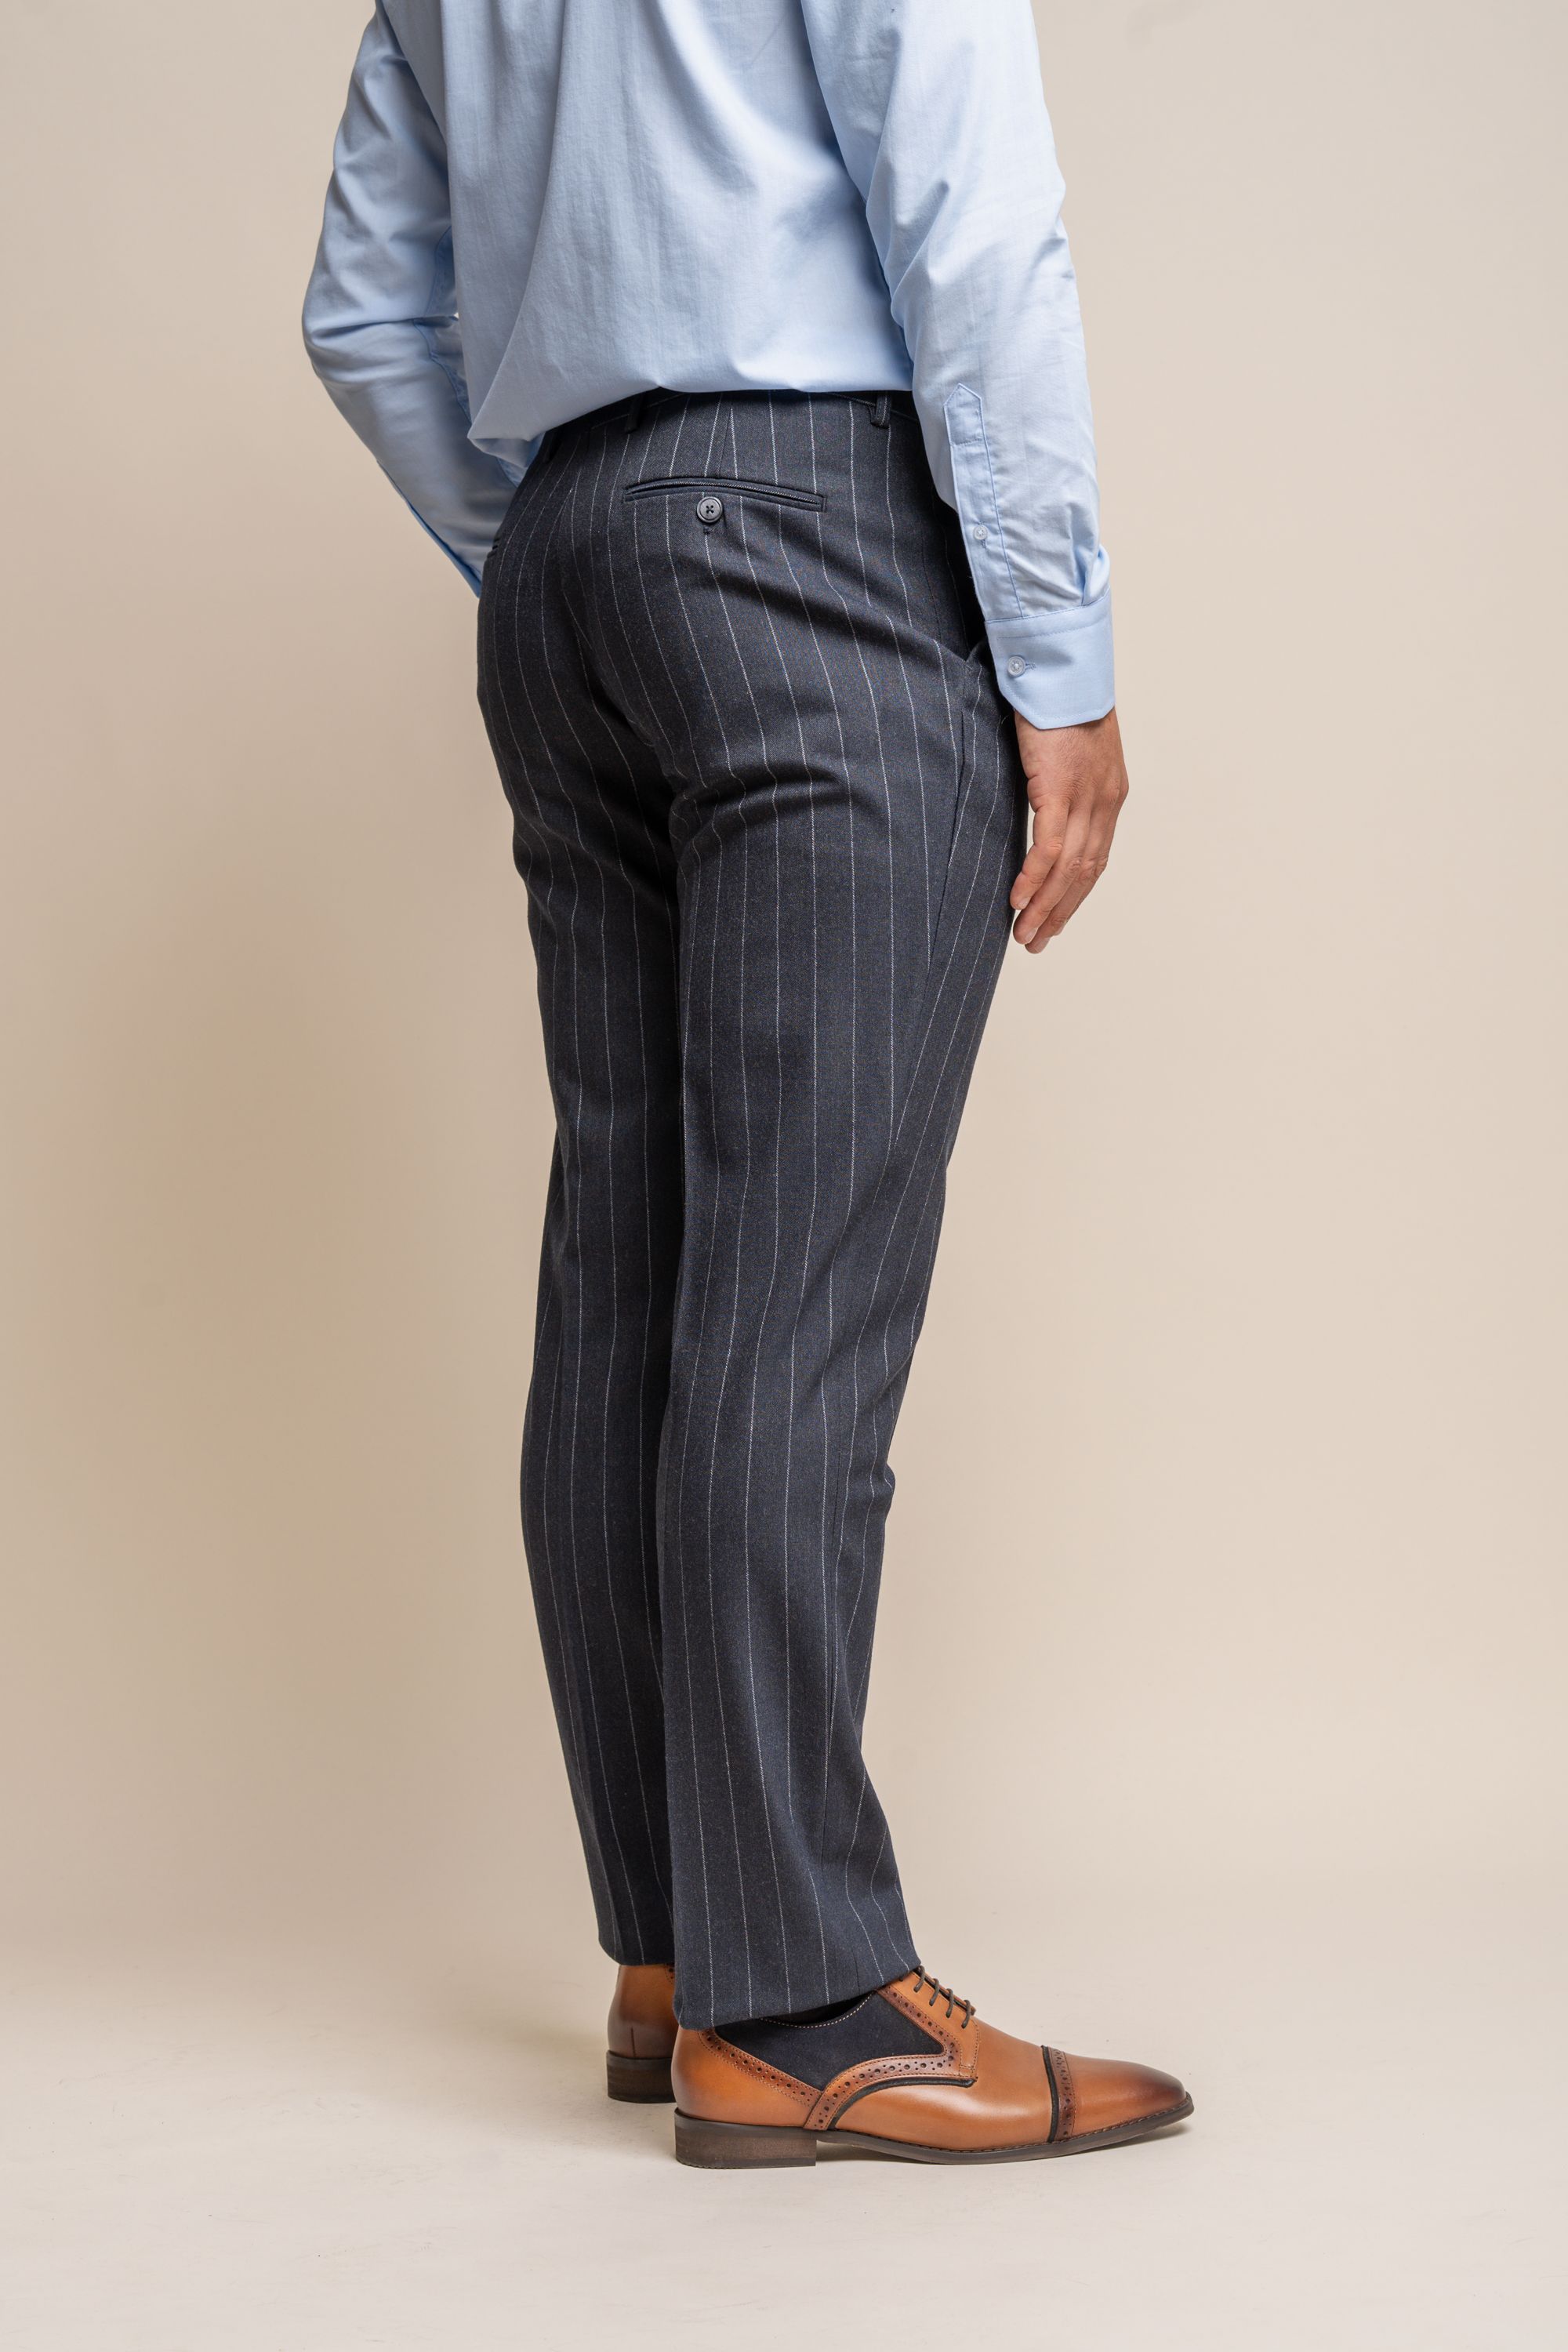 Men's Pinstripe Slim Fit Navy Blue Suit -  Invincible